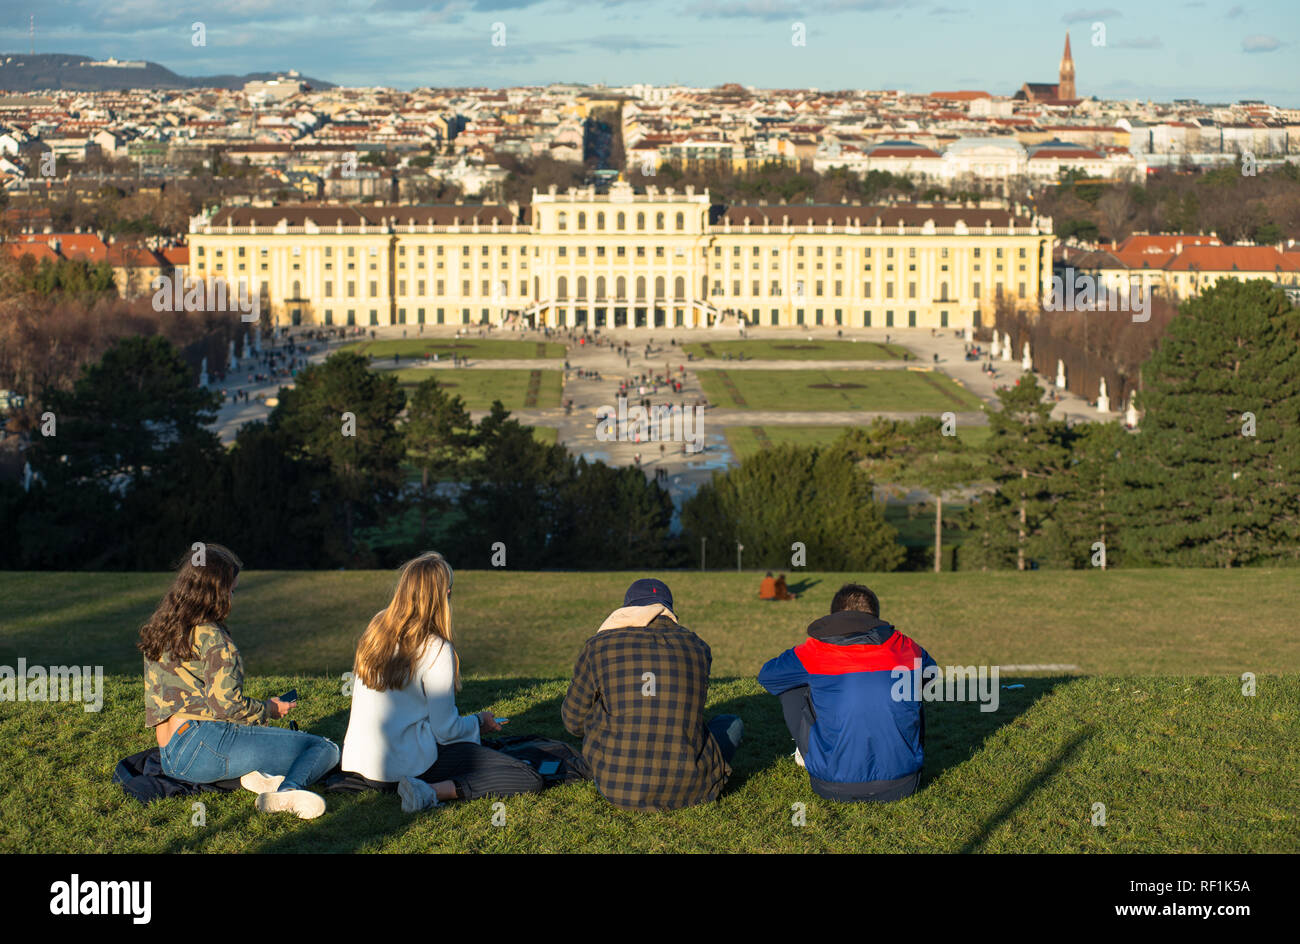 Vistas del horizonte de la ciudad de Viena desde el jardín del palacio de Schönbrunn. Austria. Foto de stock